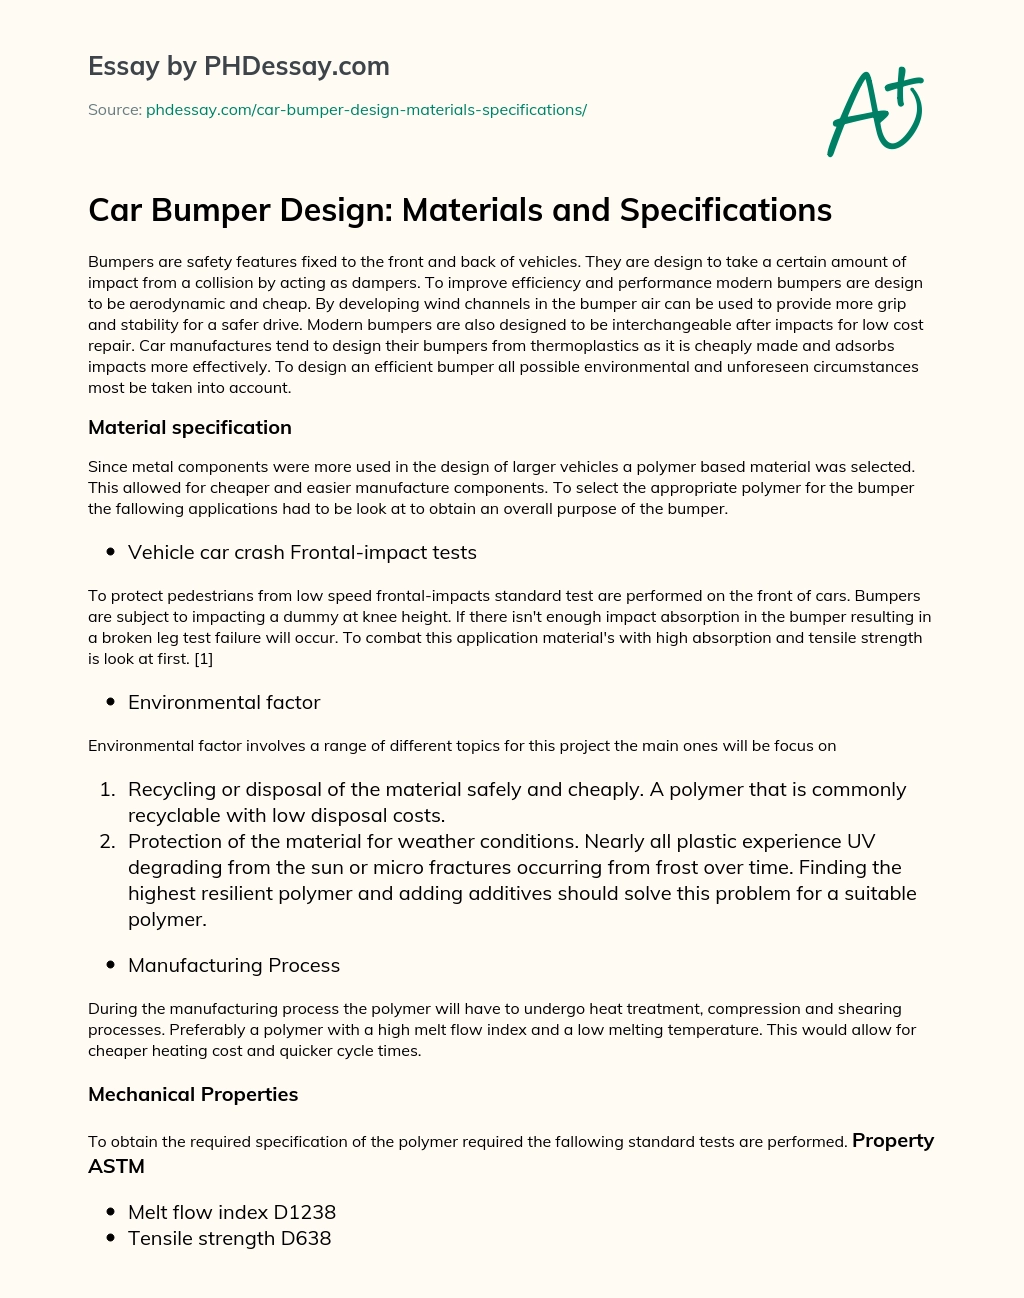 Car Bumper Design: Materials and Specifications essay